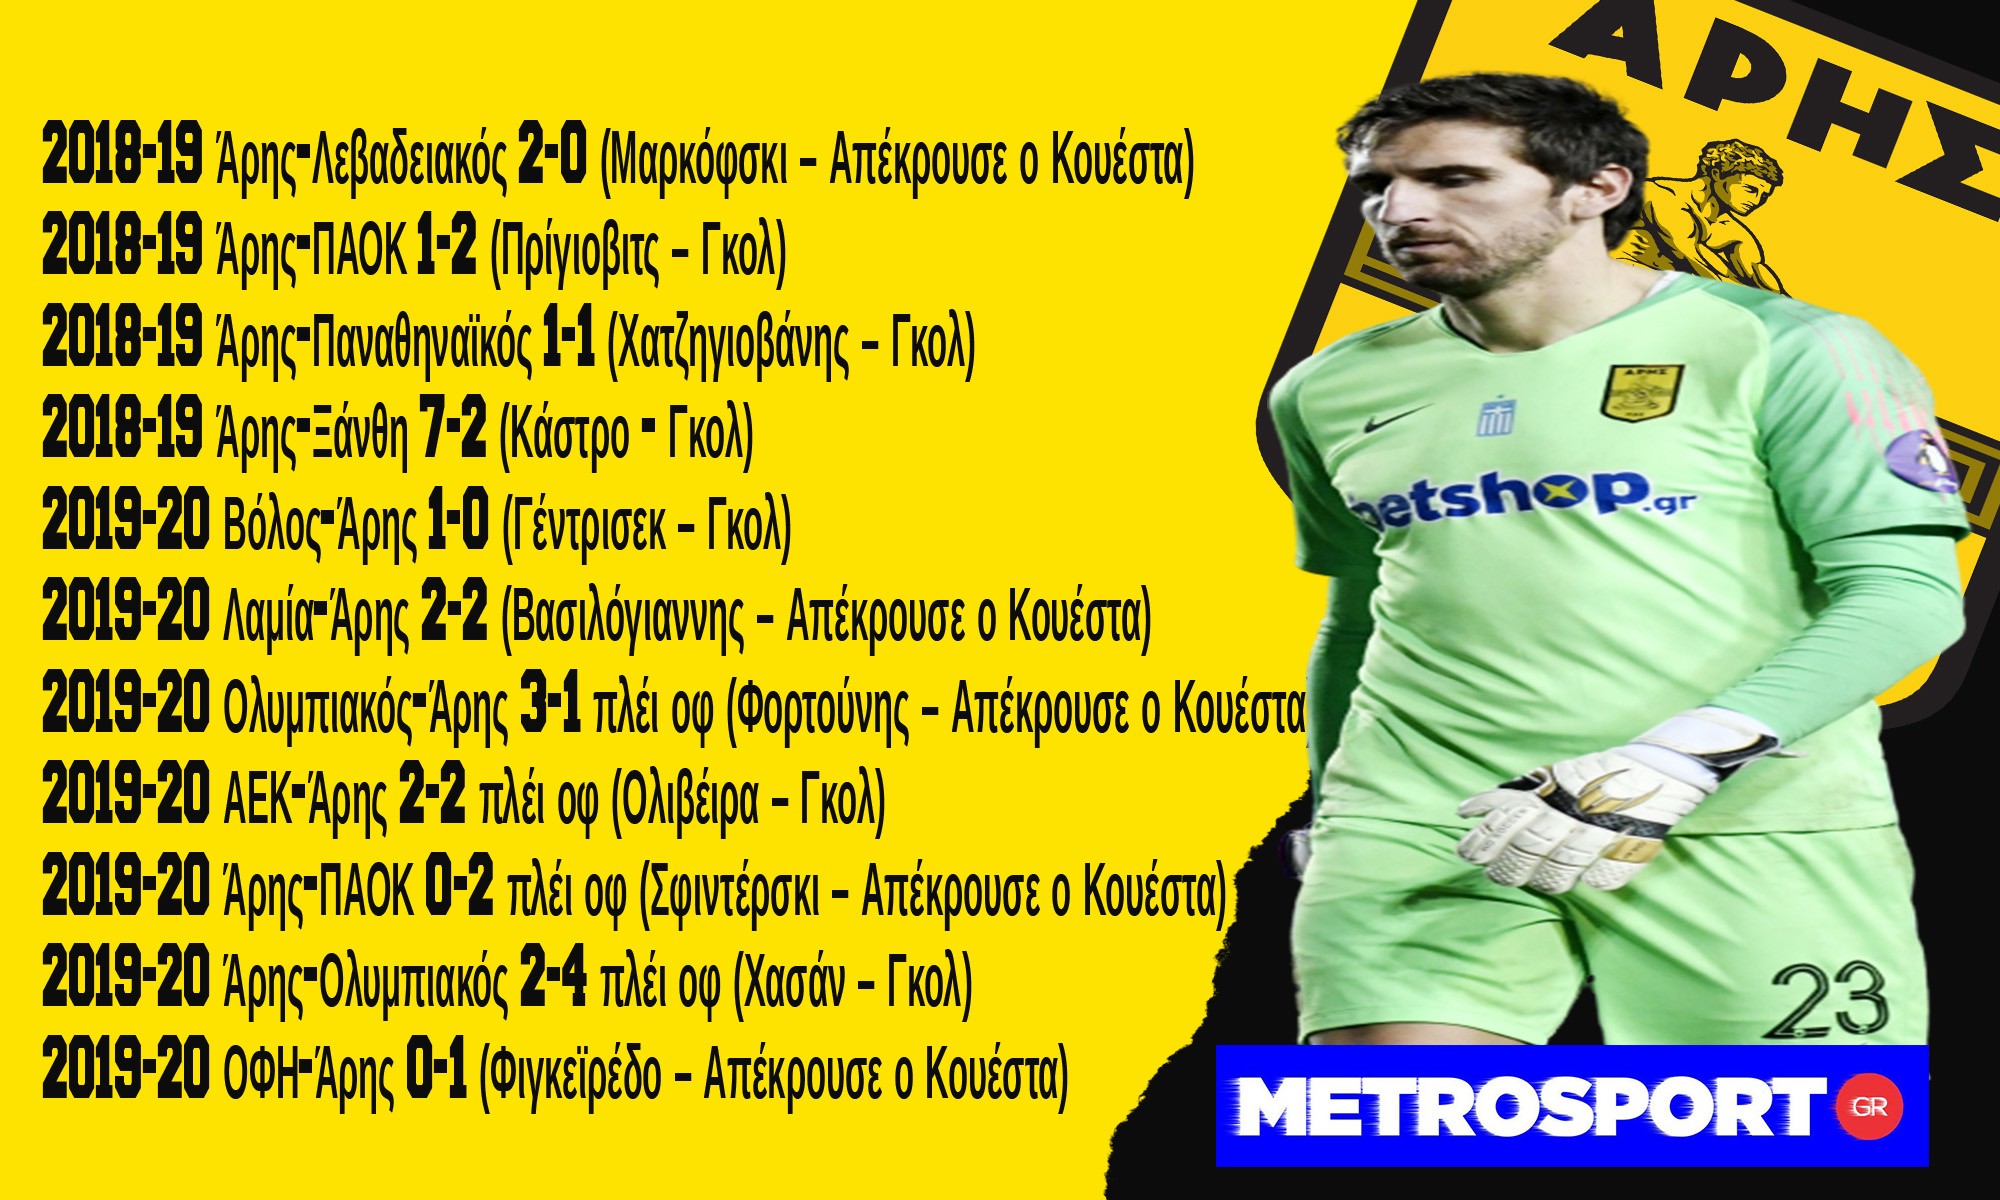 cuesta-penalties-metrosportgr-2.jpg